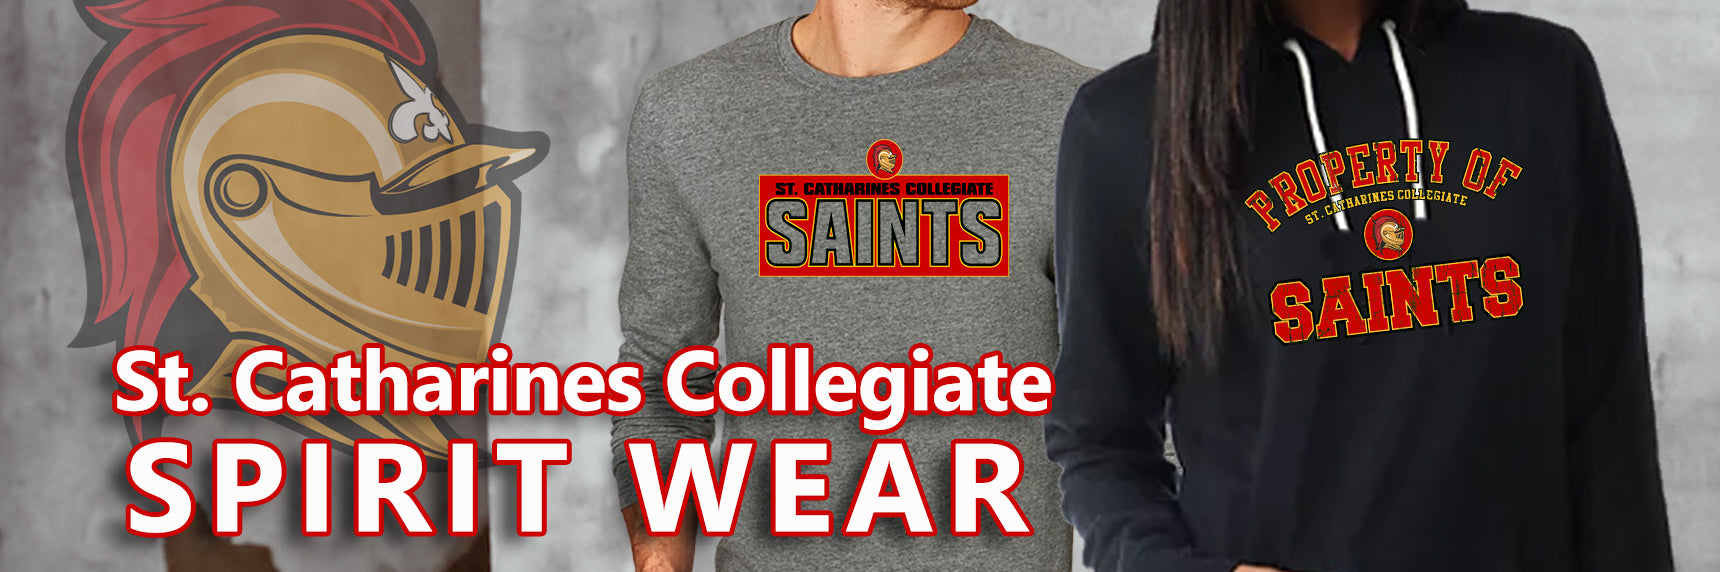 St.Catharines Collegiate